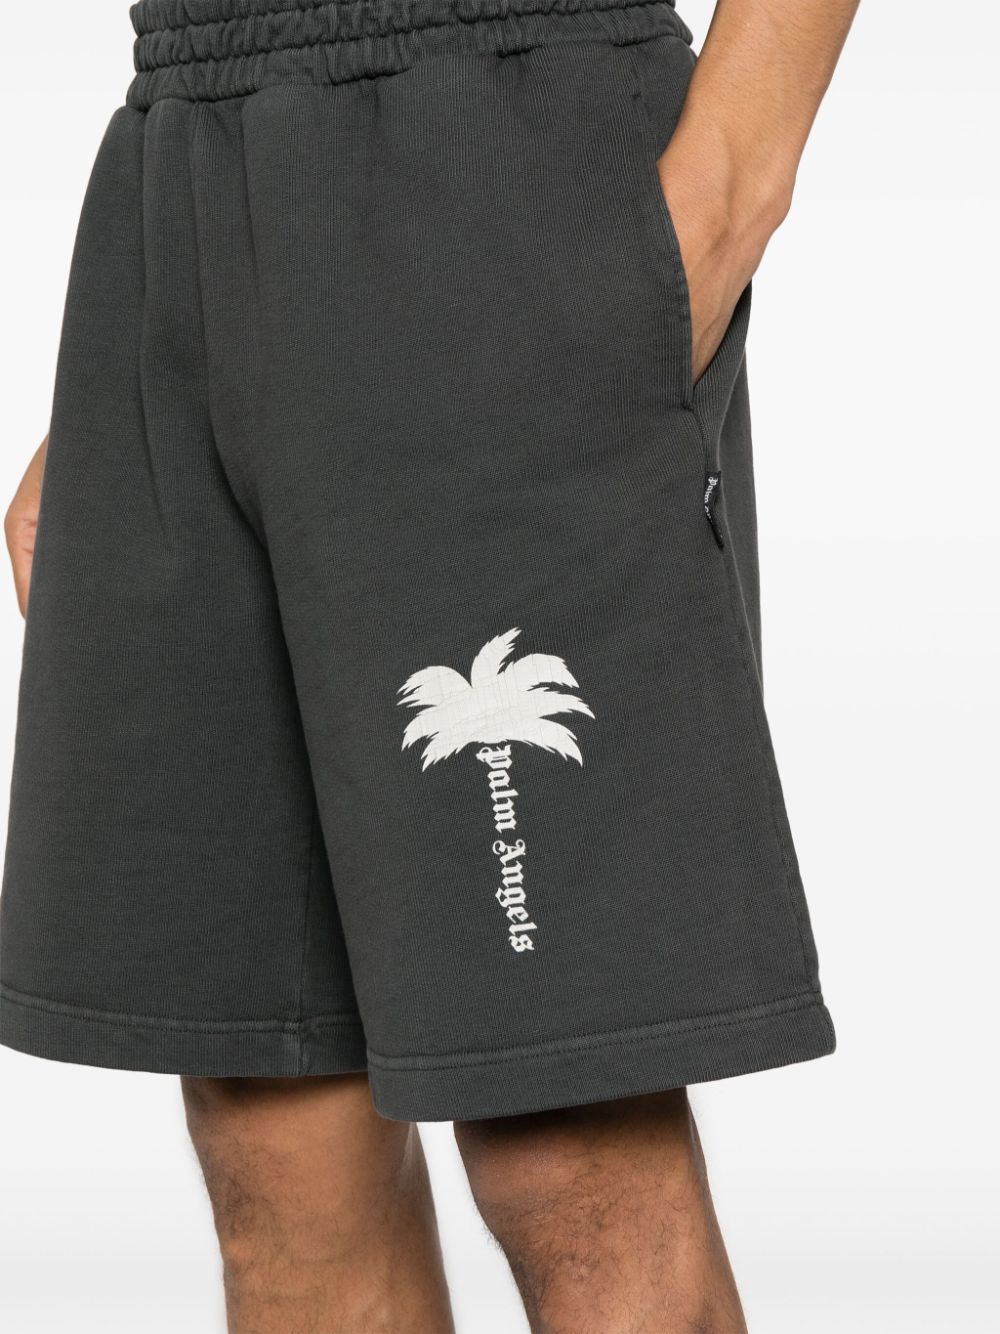 Gray Palm tree logo shorts